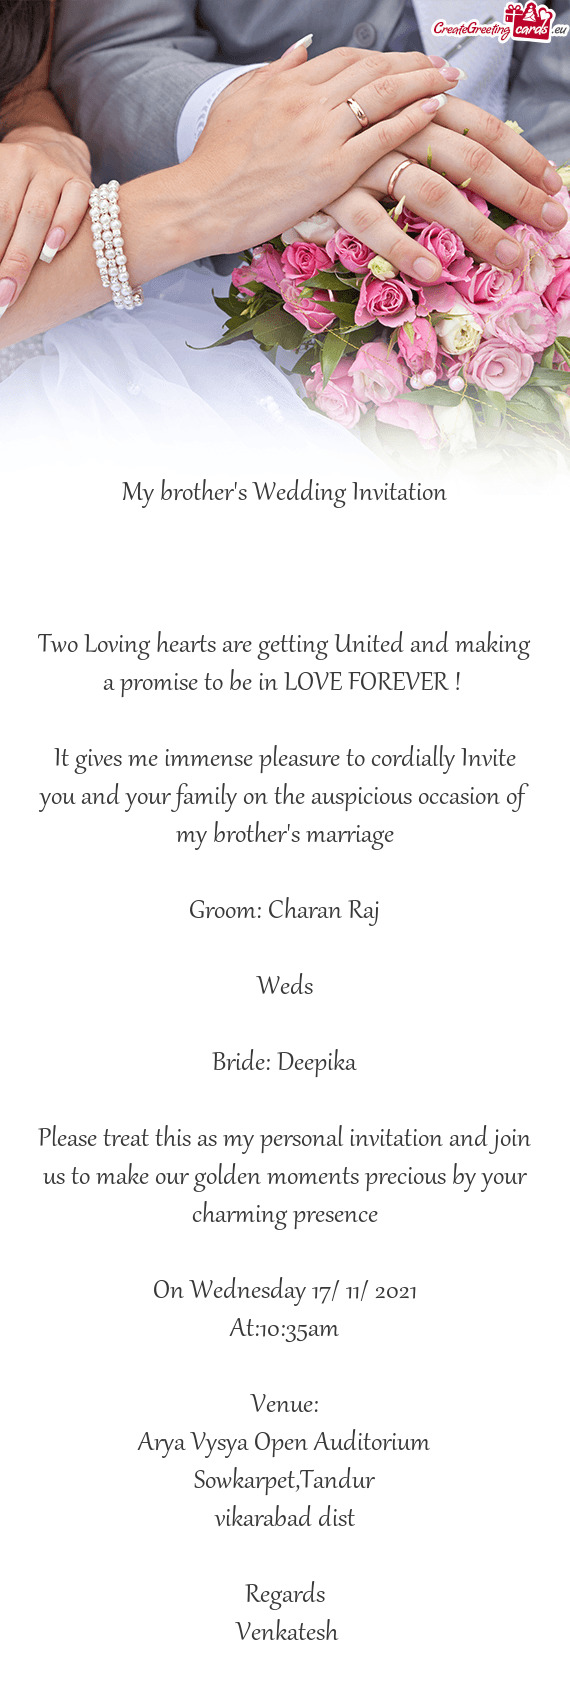 Bride: Deepika